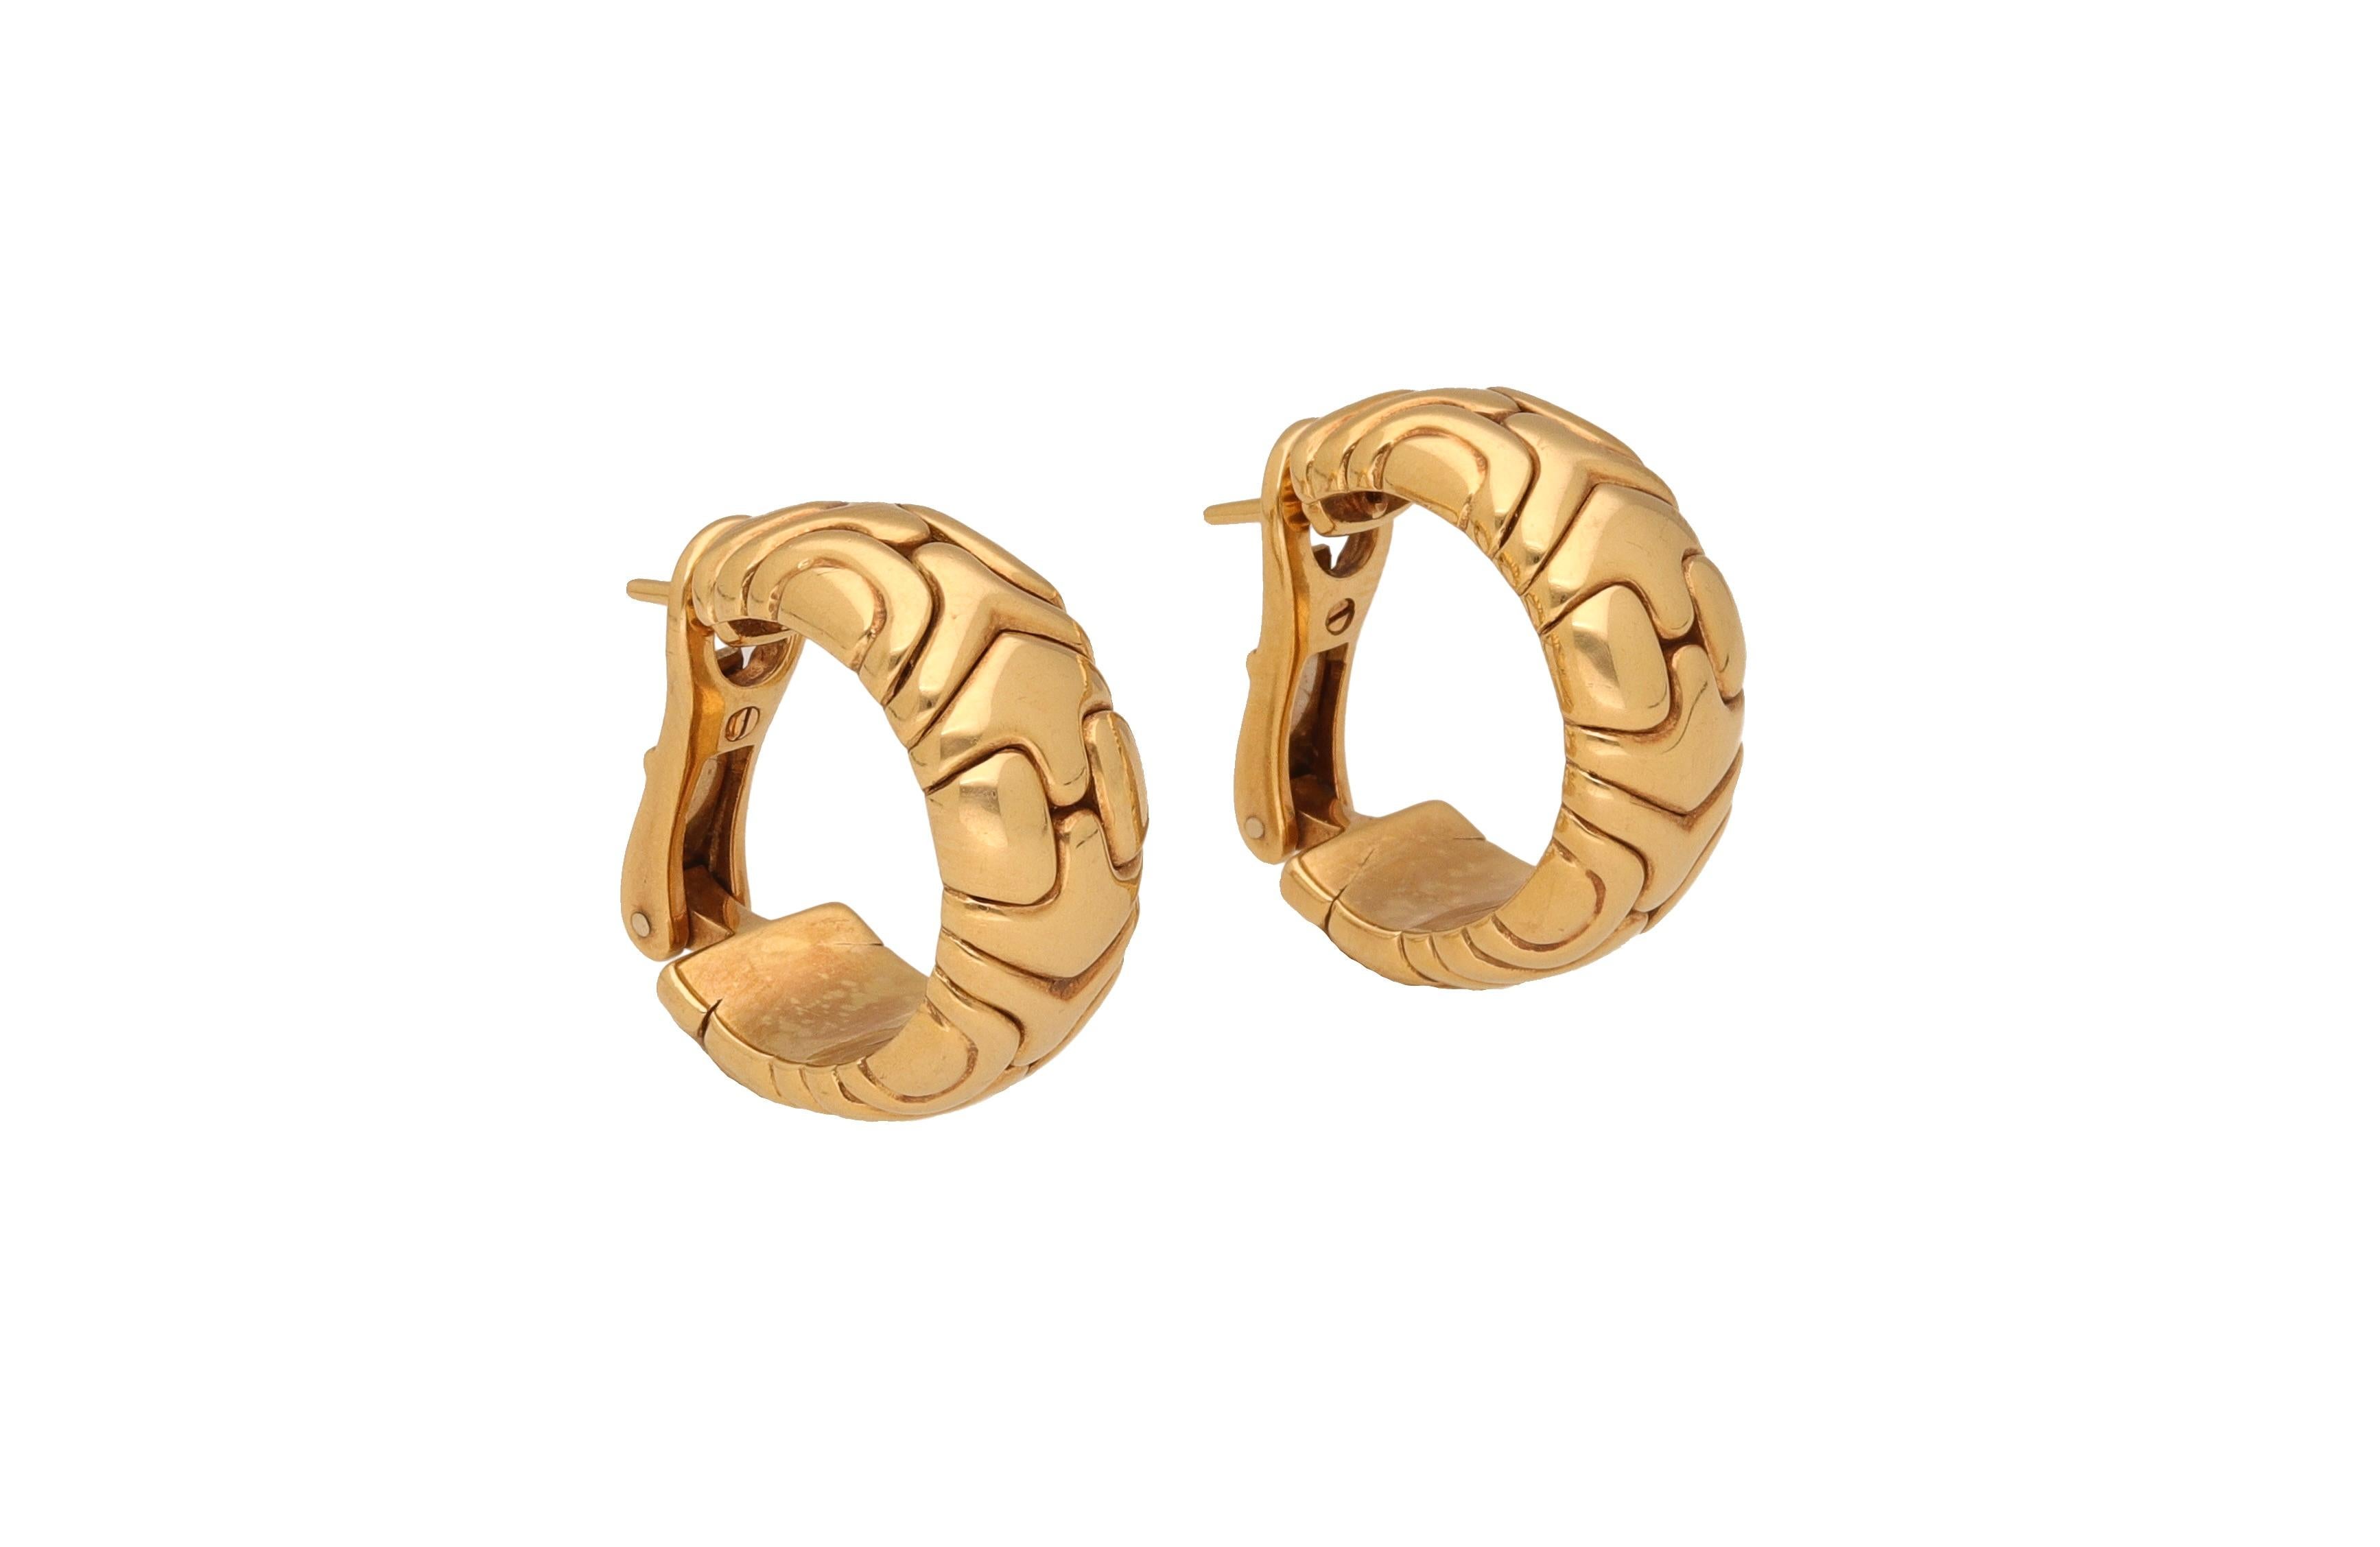 Paar Creolen aus 18 kt. Gold, signiert Bulgari.
Dieses ikonische Design gehört zur Alveare-Kollektion von Bulgari.
Diese Ohrringe mit Ohrstecker und Clip sind perfekt für jede Gelegenheit.

1990 ca.
Gewicht: 32,10
Äußerer Durchmesser: 2,35 cm.
Eine